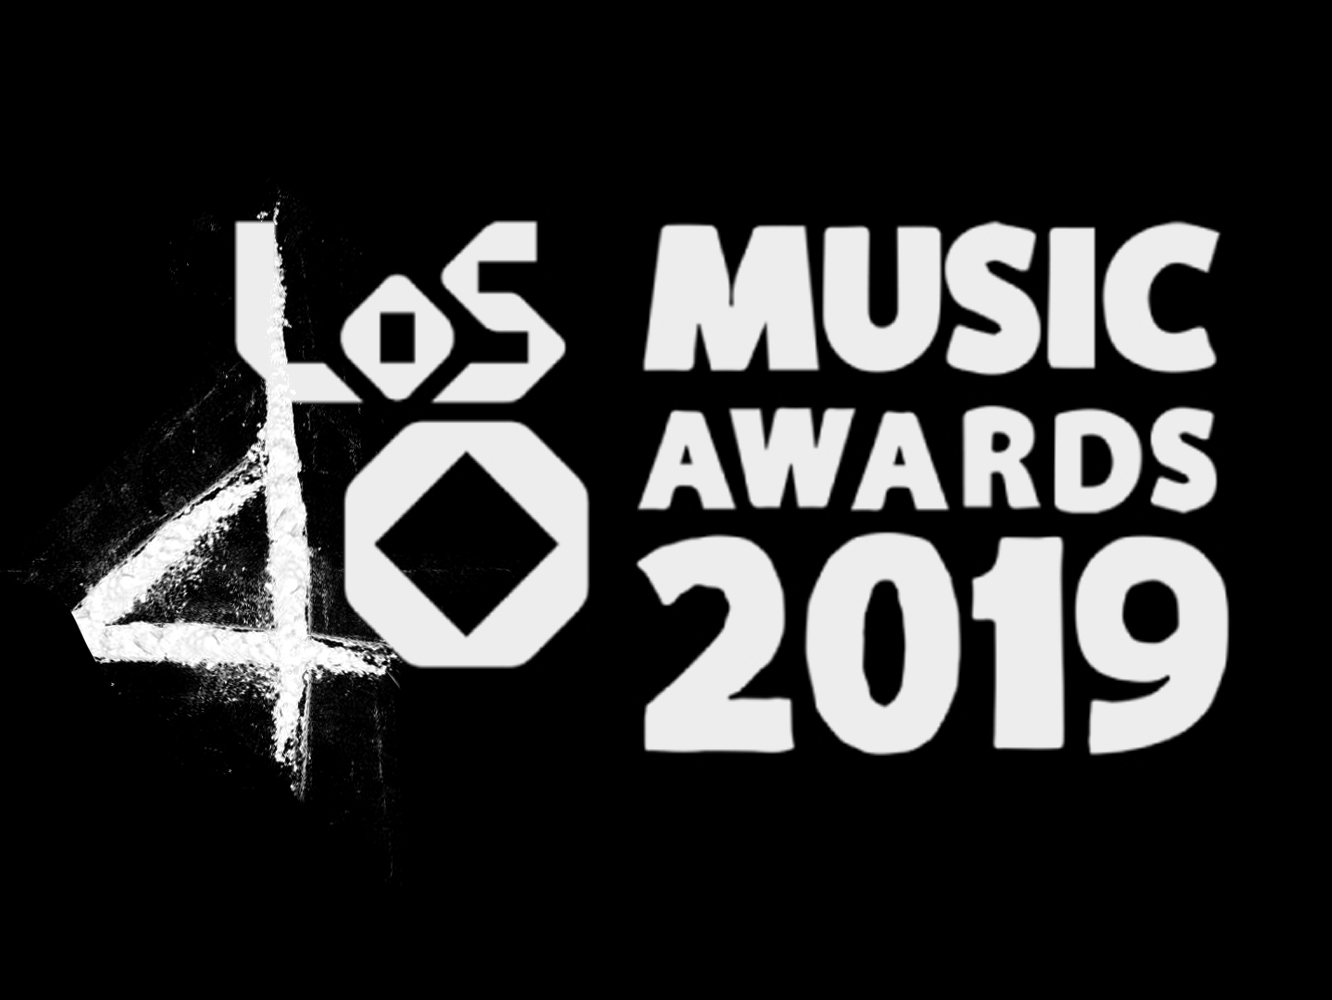  Sofía Reyes, Ester Expósito y el autor de ‘Fariña’, grandes triunfadores de Los40 Music Awards 2019